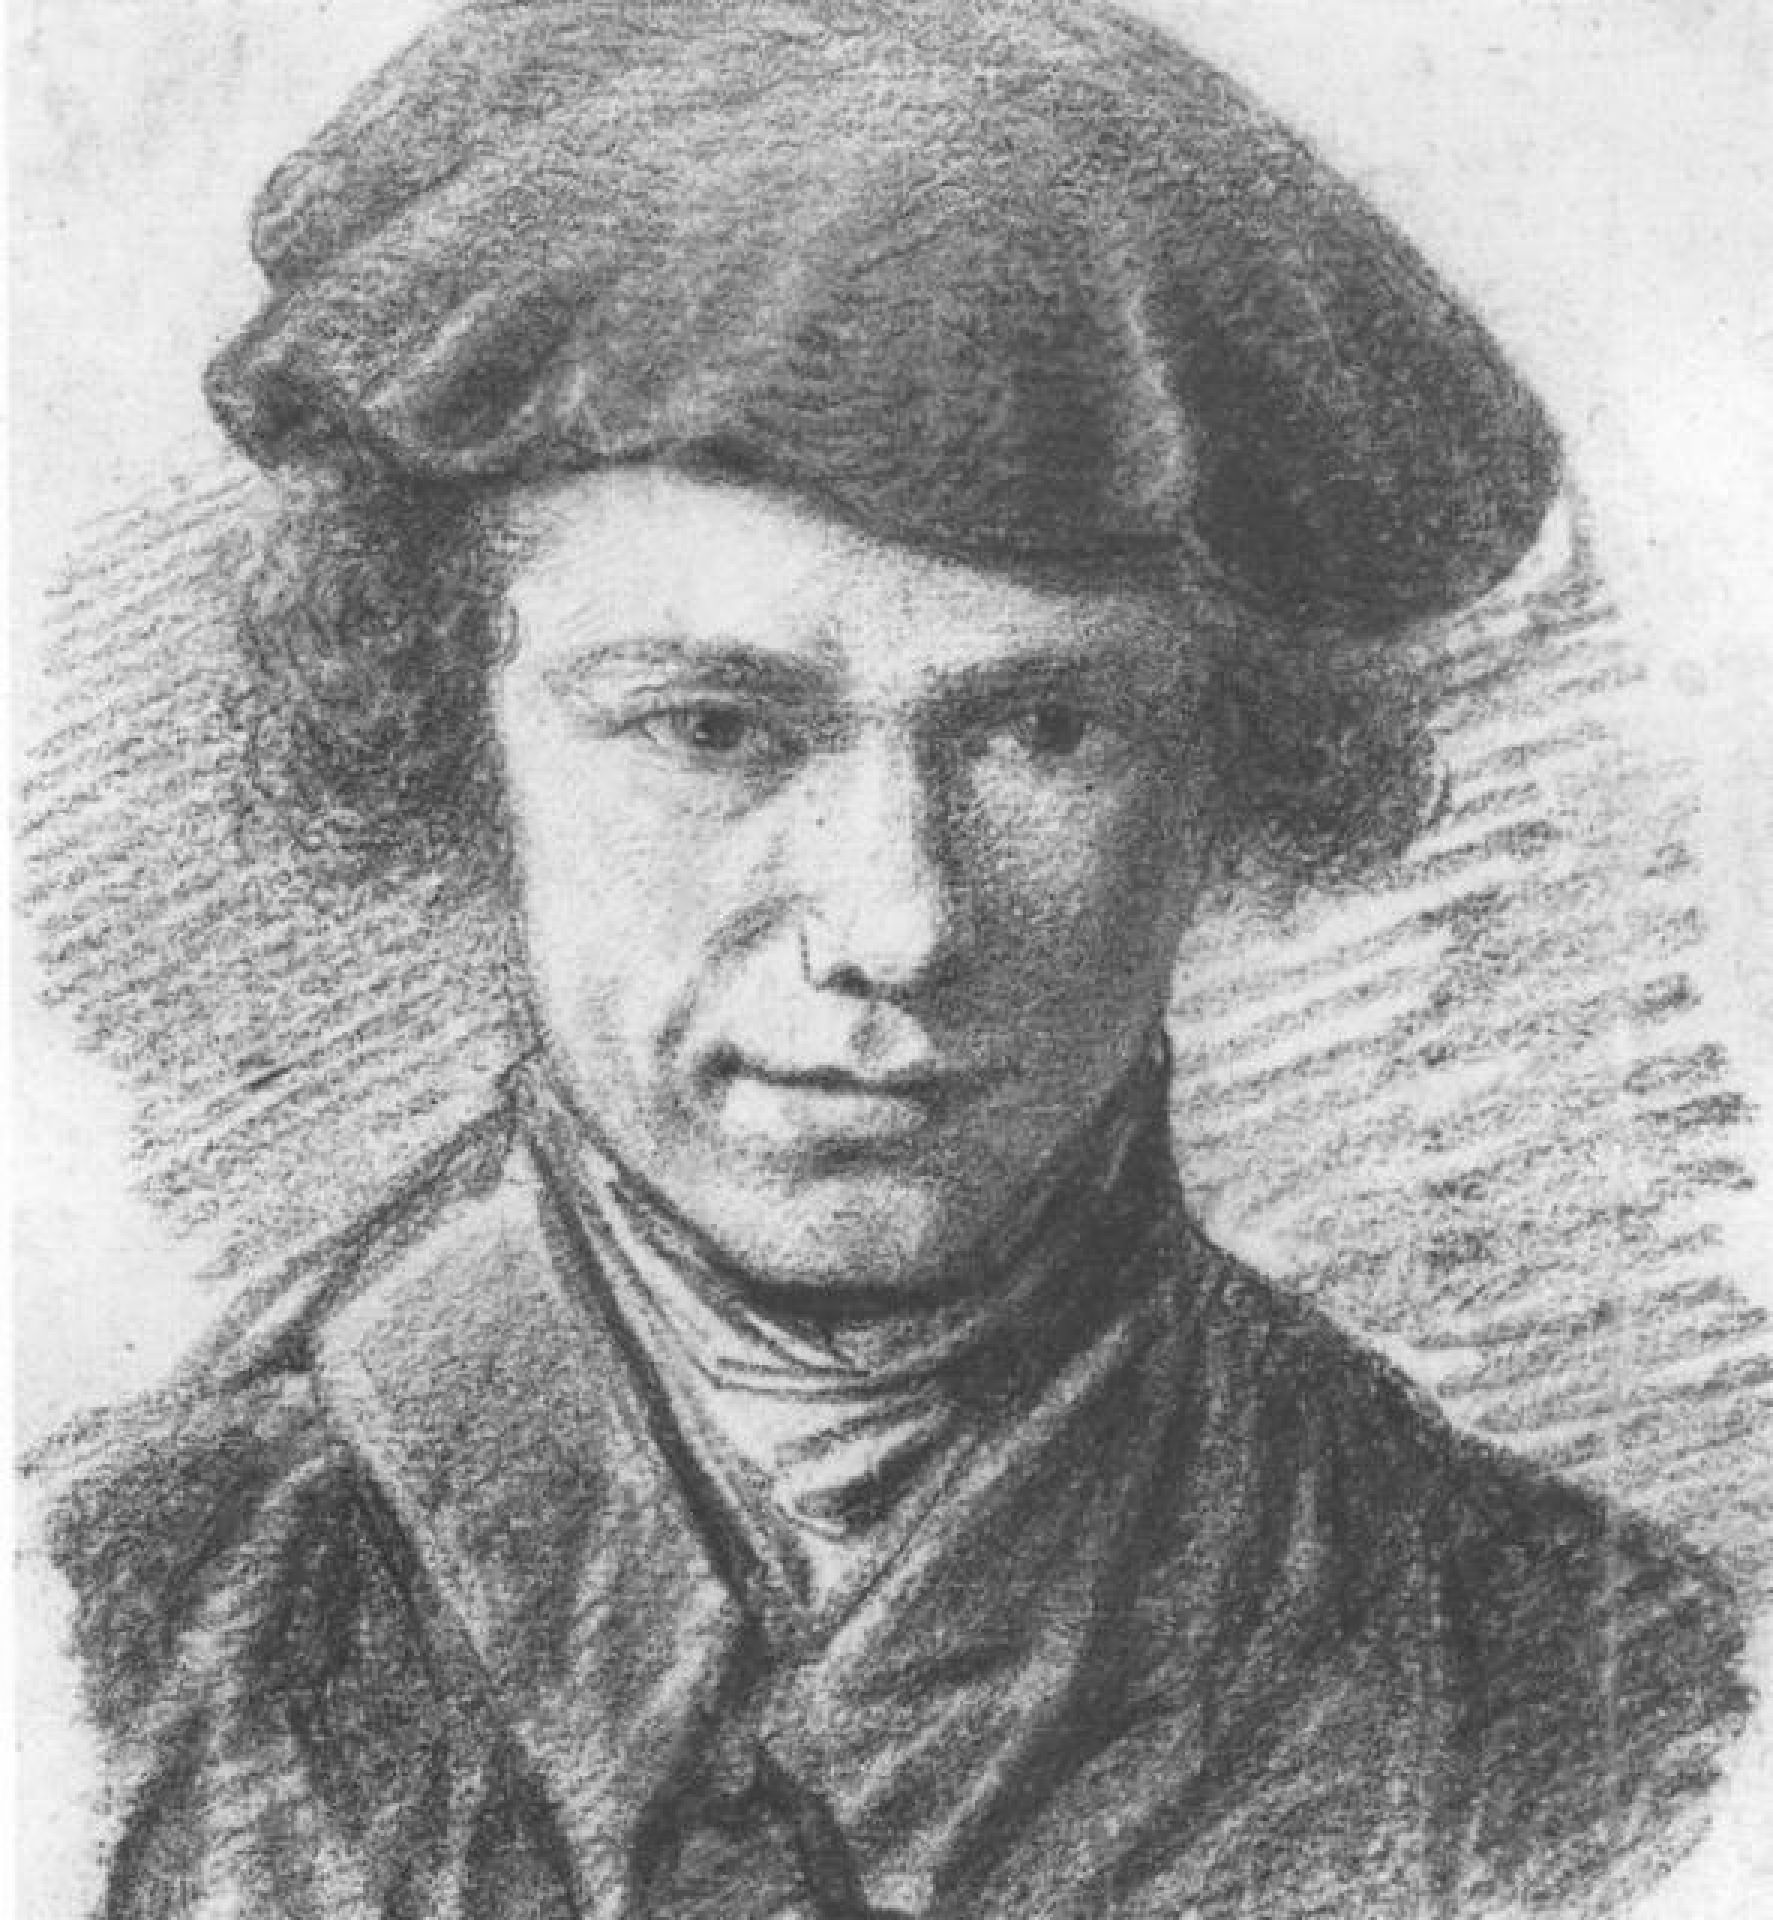 Portret van kunstenaar, kunstschilder, aquarellist en tekenaar Barend Cornelis Koekkoek